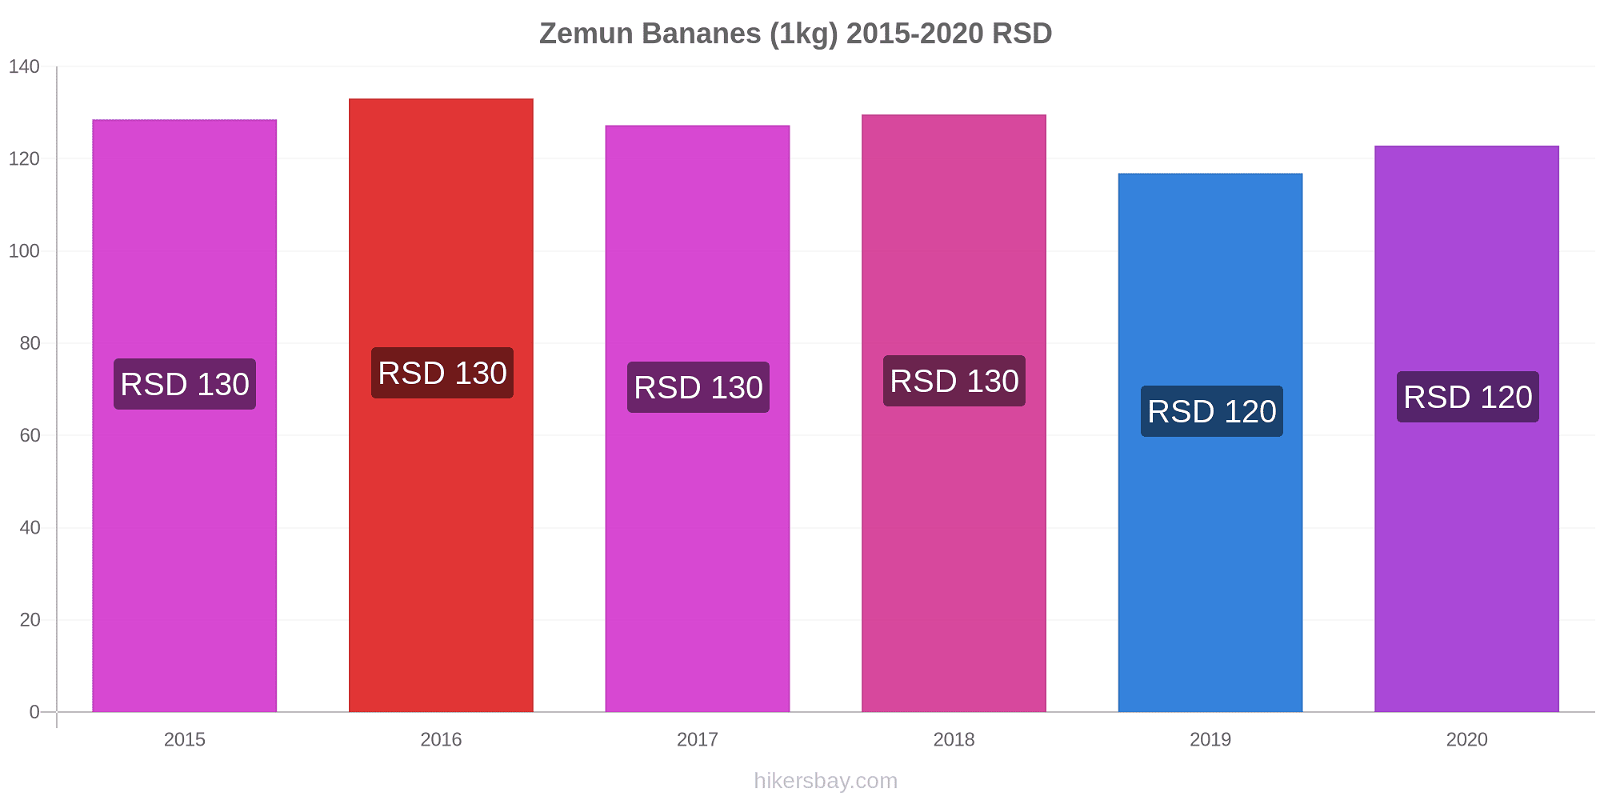 Zemun changements de prix Bananes (1kg) hikersbay.com